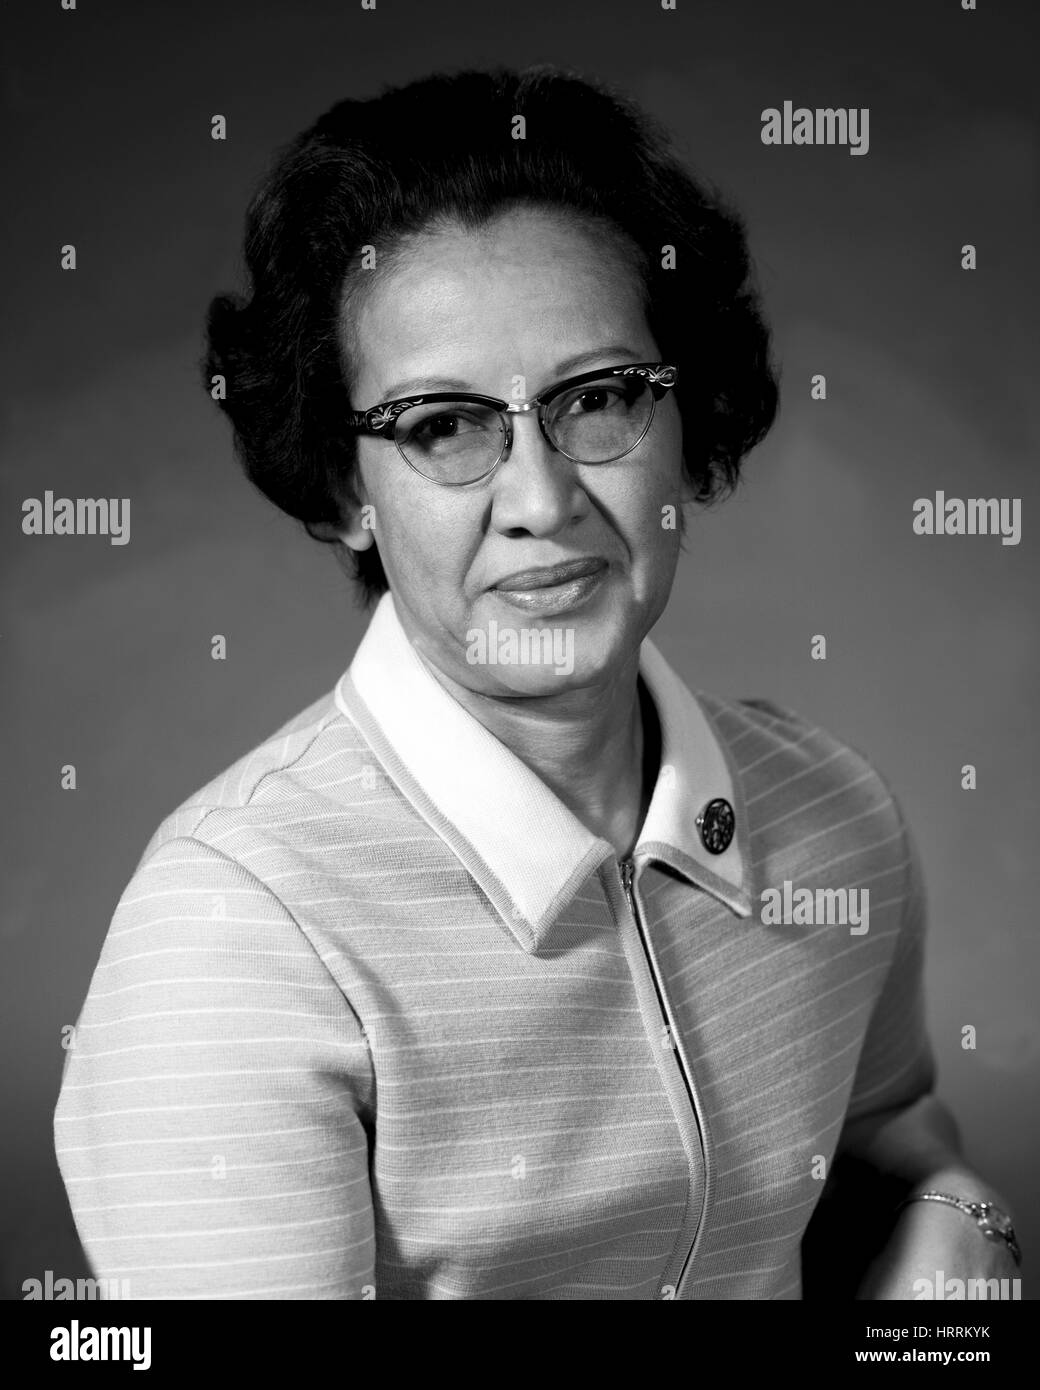 Ritratto di Katherine Johnson, una femmina fisico e scienziato della NASA/NACA, 1955. Immagine cortesia della NASA. Foto Stock